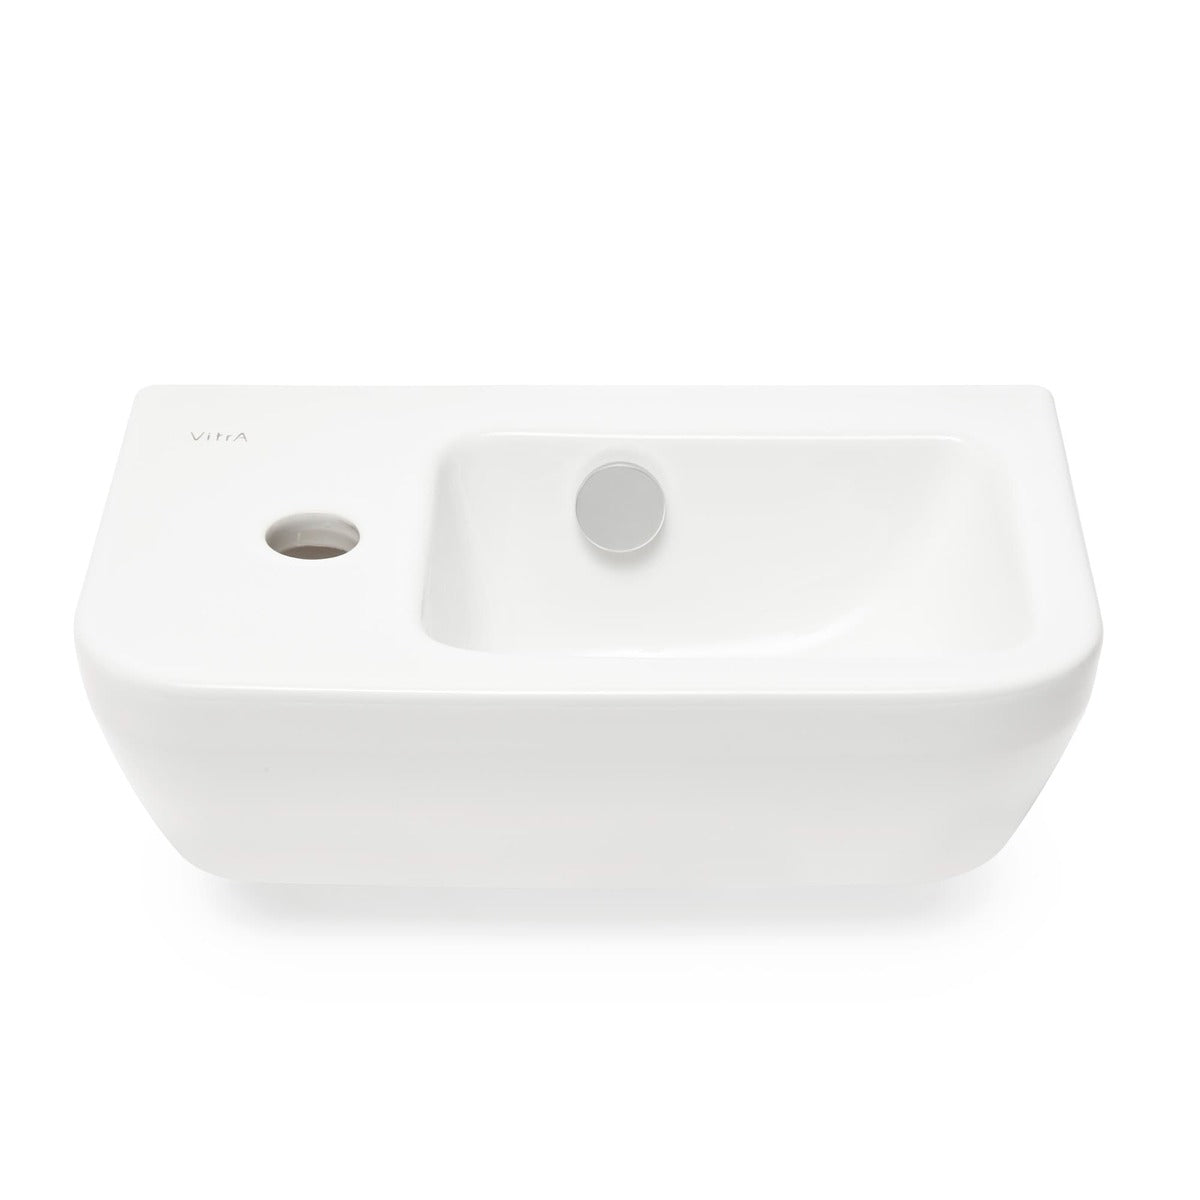 Umivalniki 7090-003-0028 Vitra Integra 37 x 22 cm leva izvedba keramični umivalnik z odprtino za armaturo | KOPALNICA-ONLINE.SI